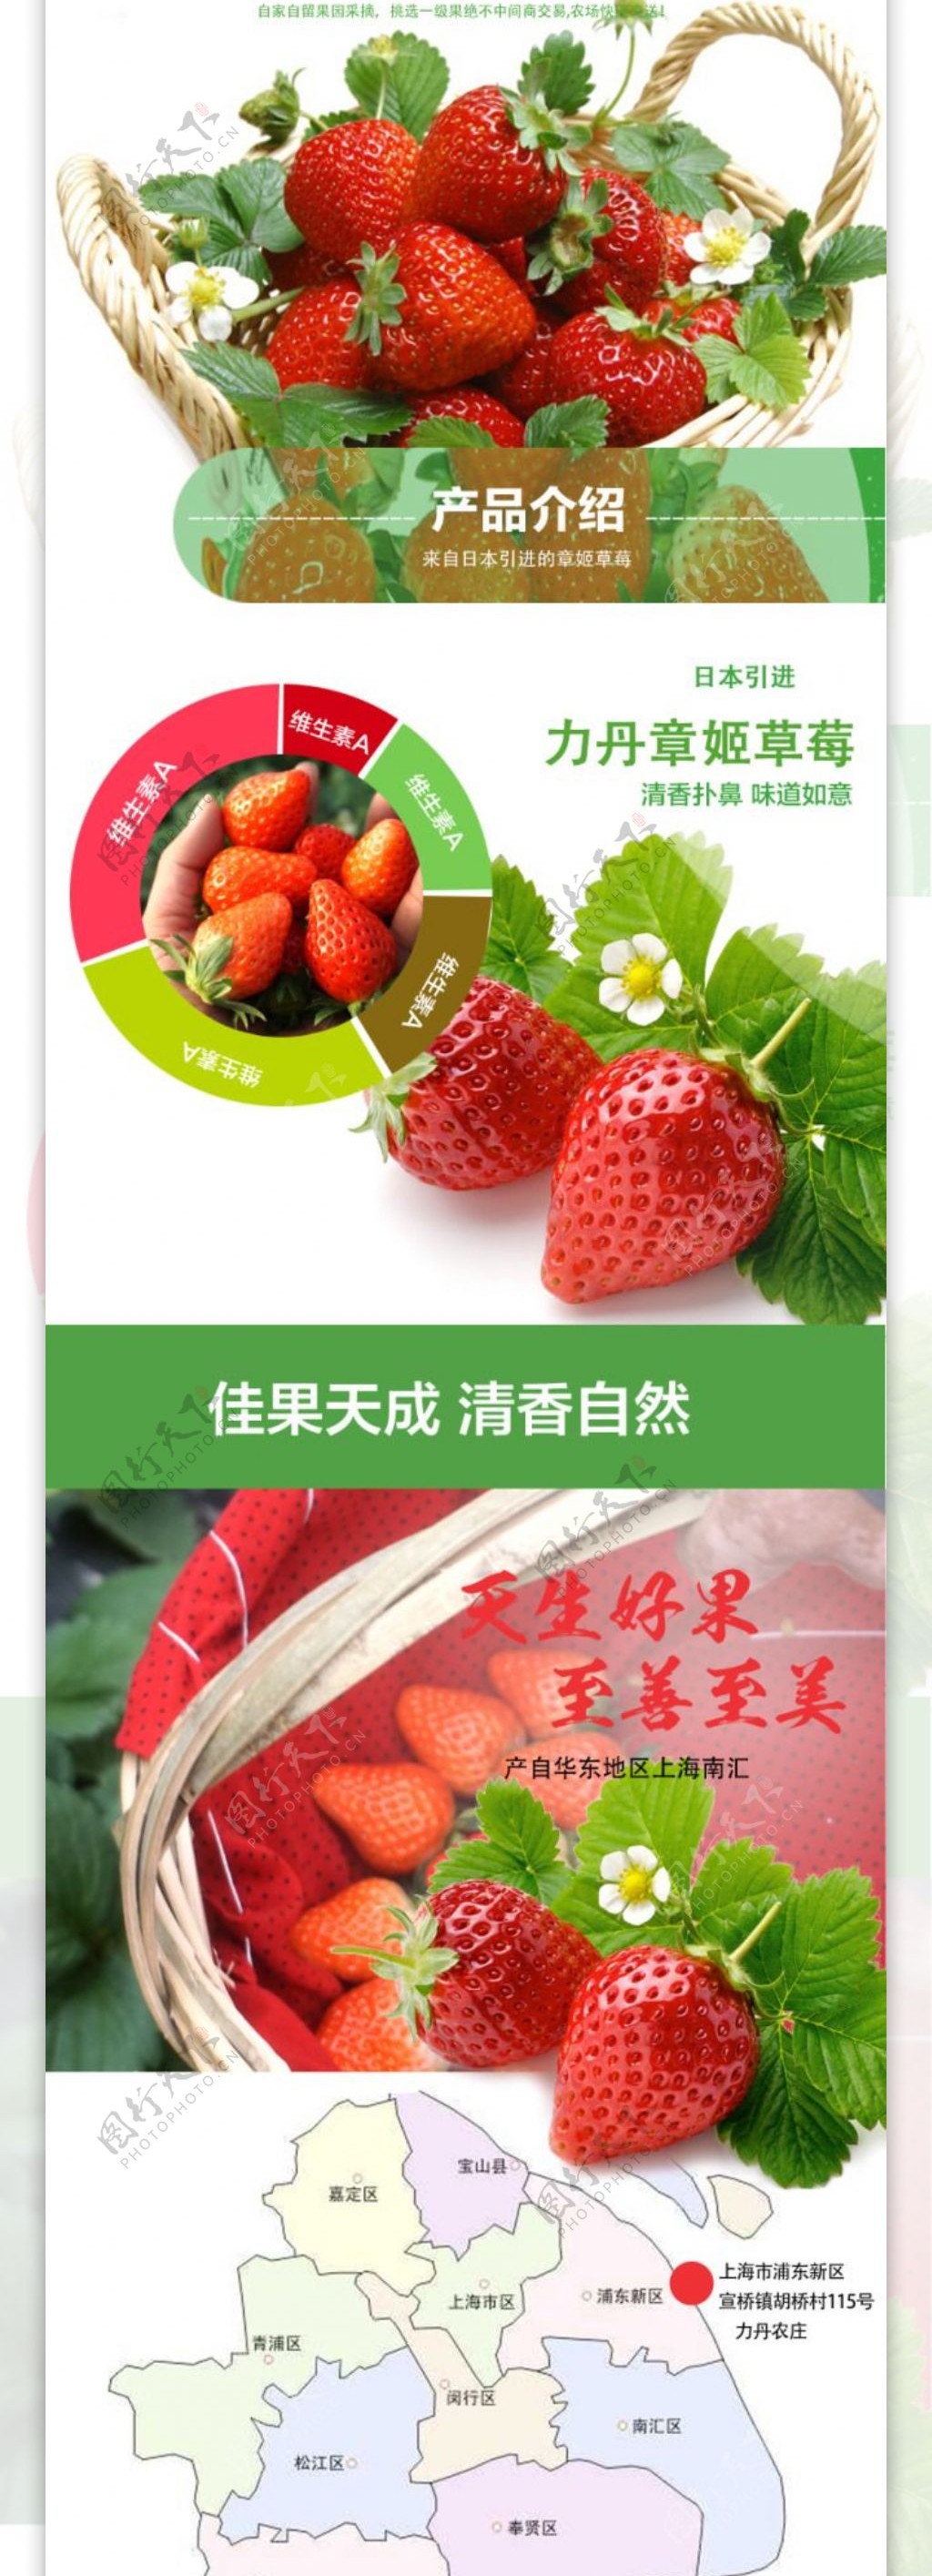 草莓详情页